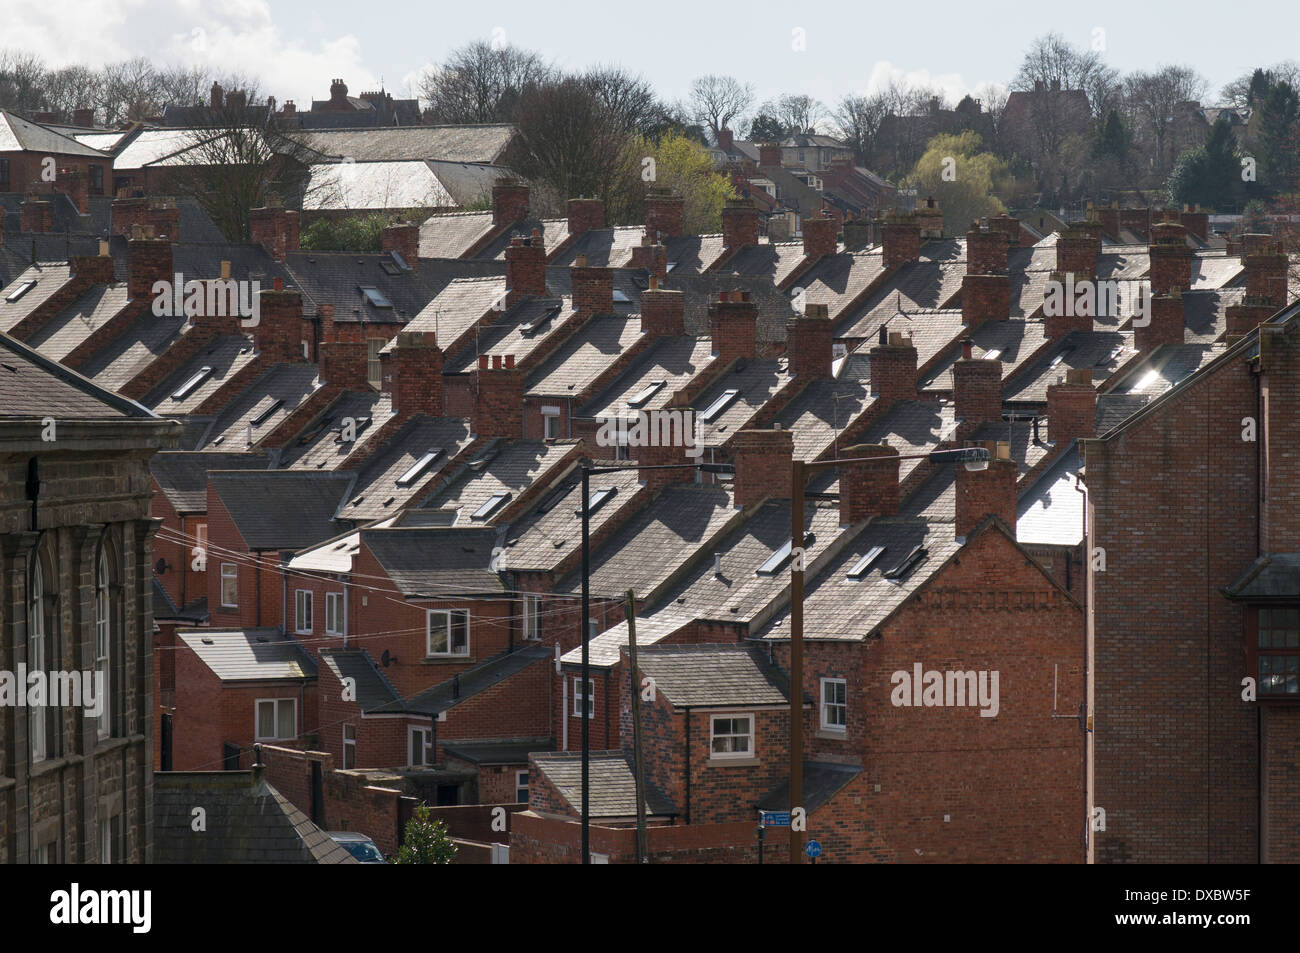 Lignes en pente des maisons en terrasse dans la ville de Durham North East England UK Banque D'Images